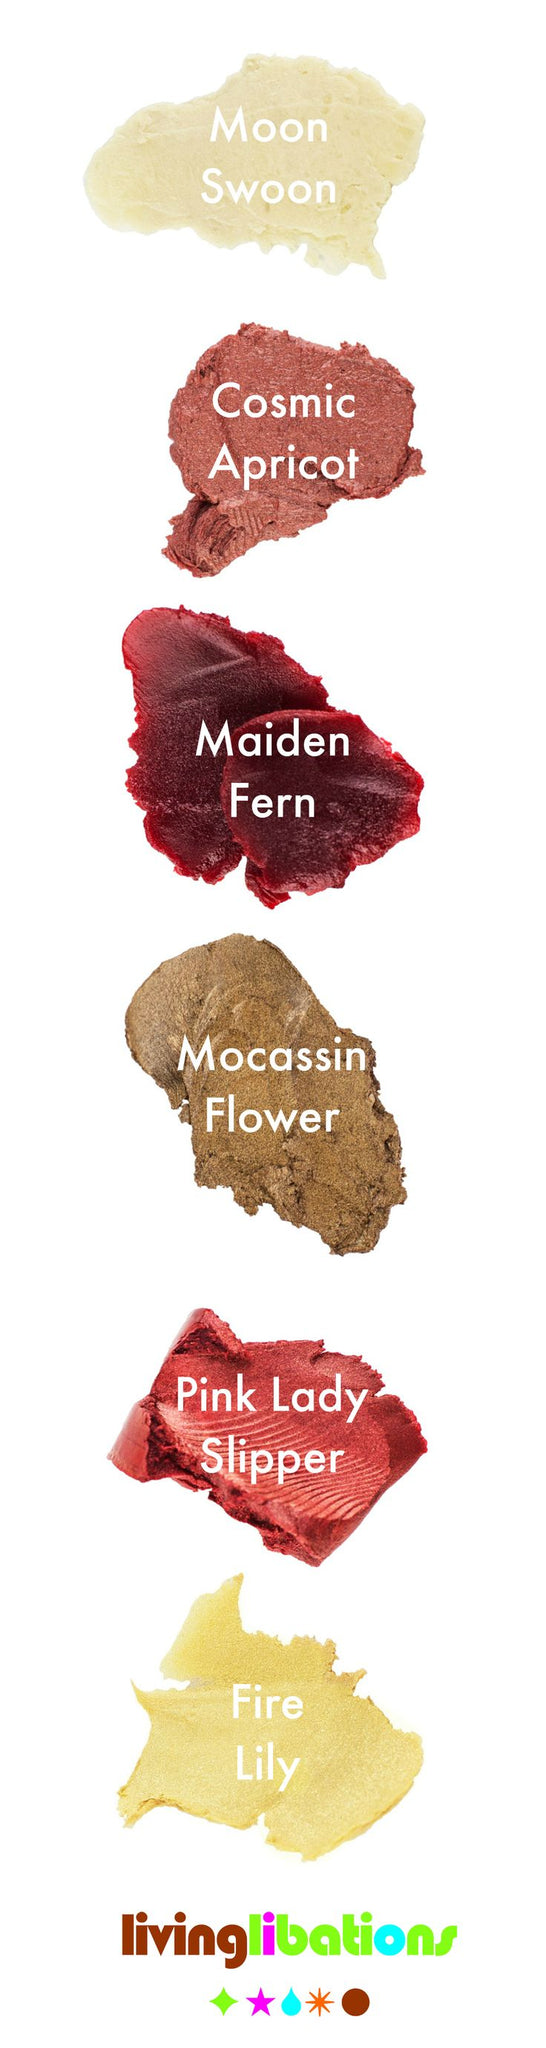 Moccasin Flower Shimmer